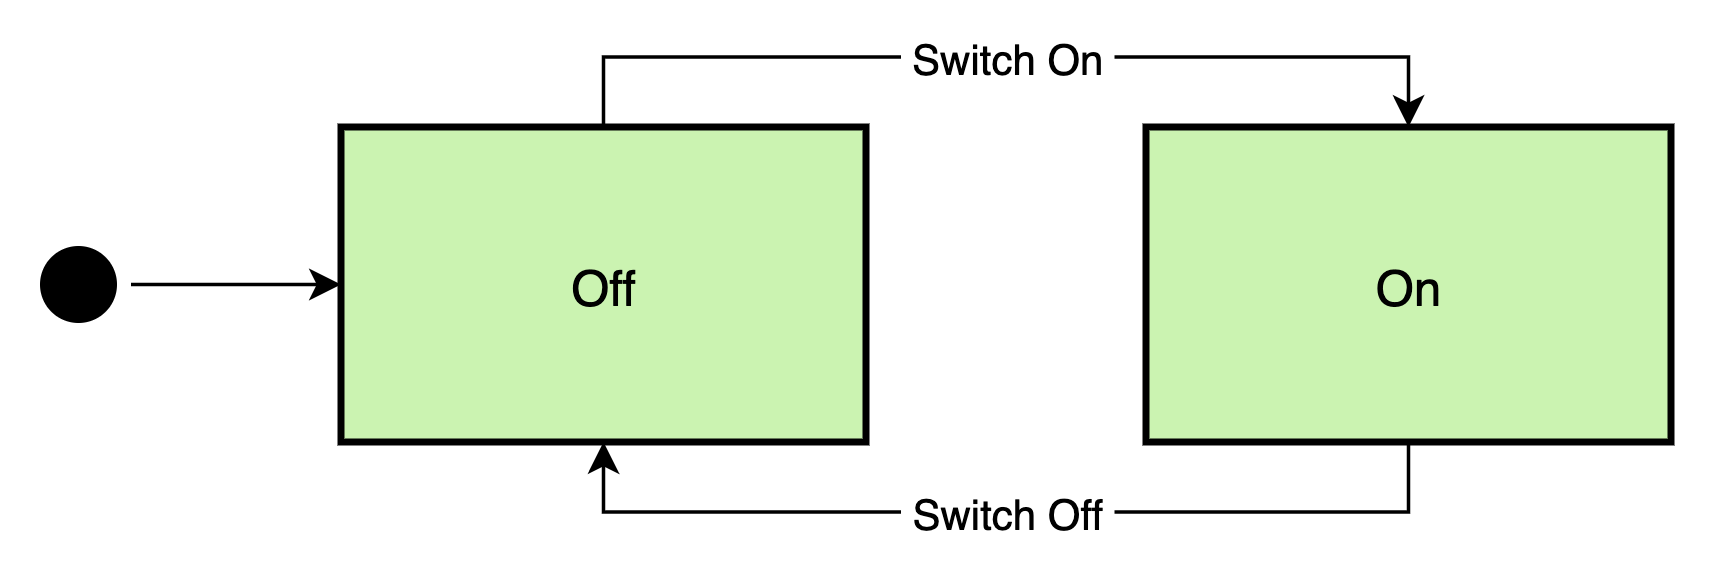 Light Switch FSM